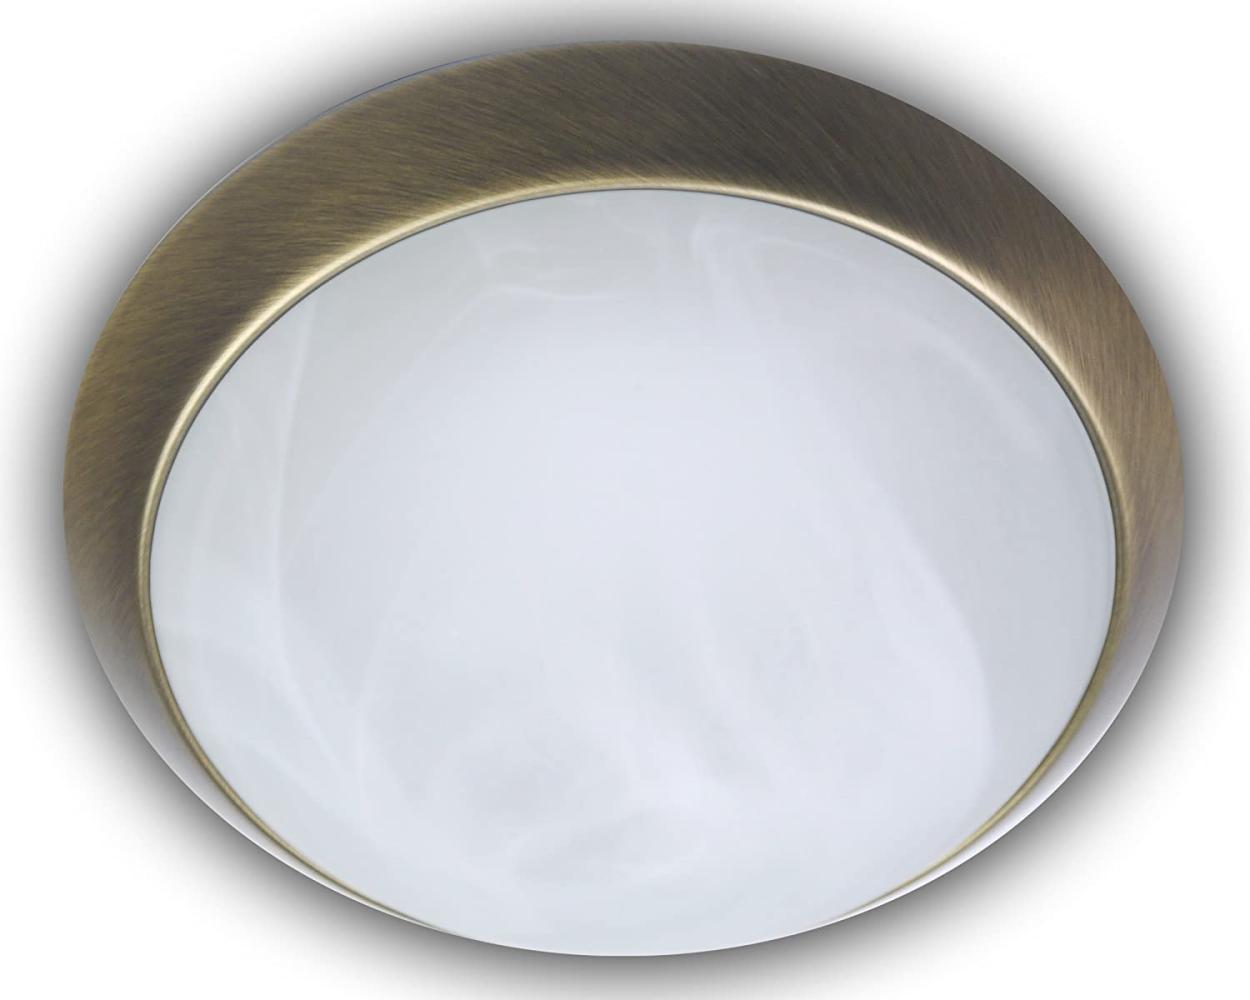 LED-Deckenleuchte rund, Glas Alabaster, Dekorring Altmessing, Ø 25cm Bild 1